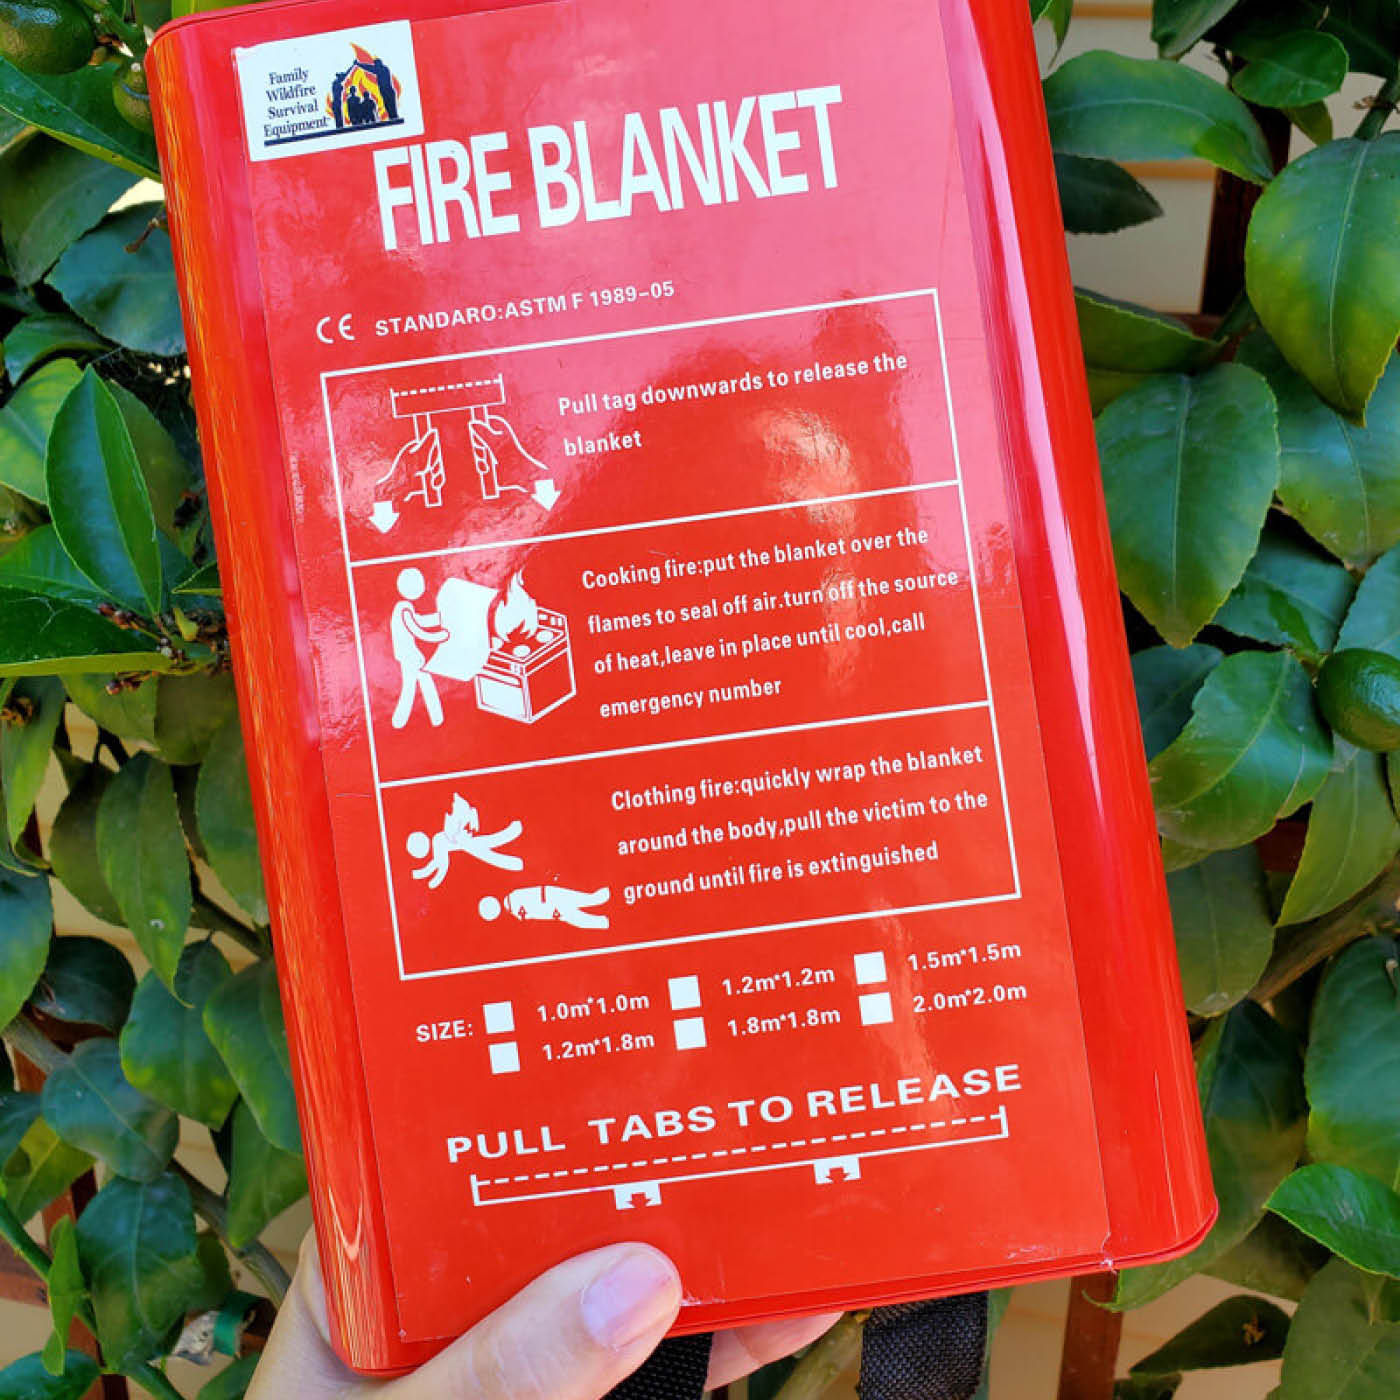 Fire blanket in case of fire